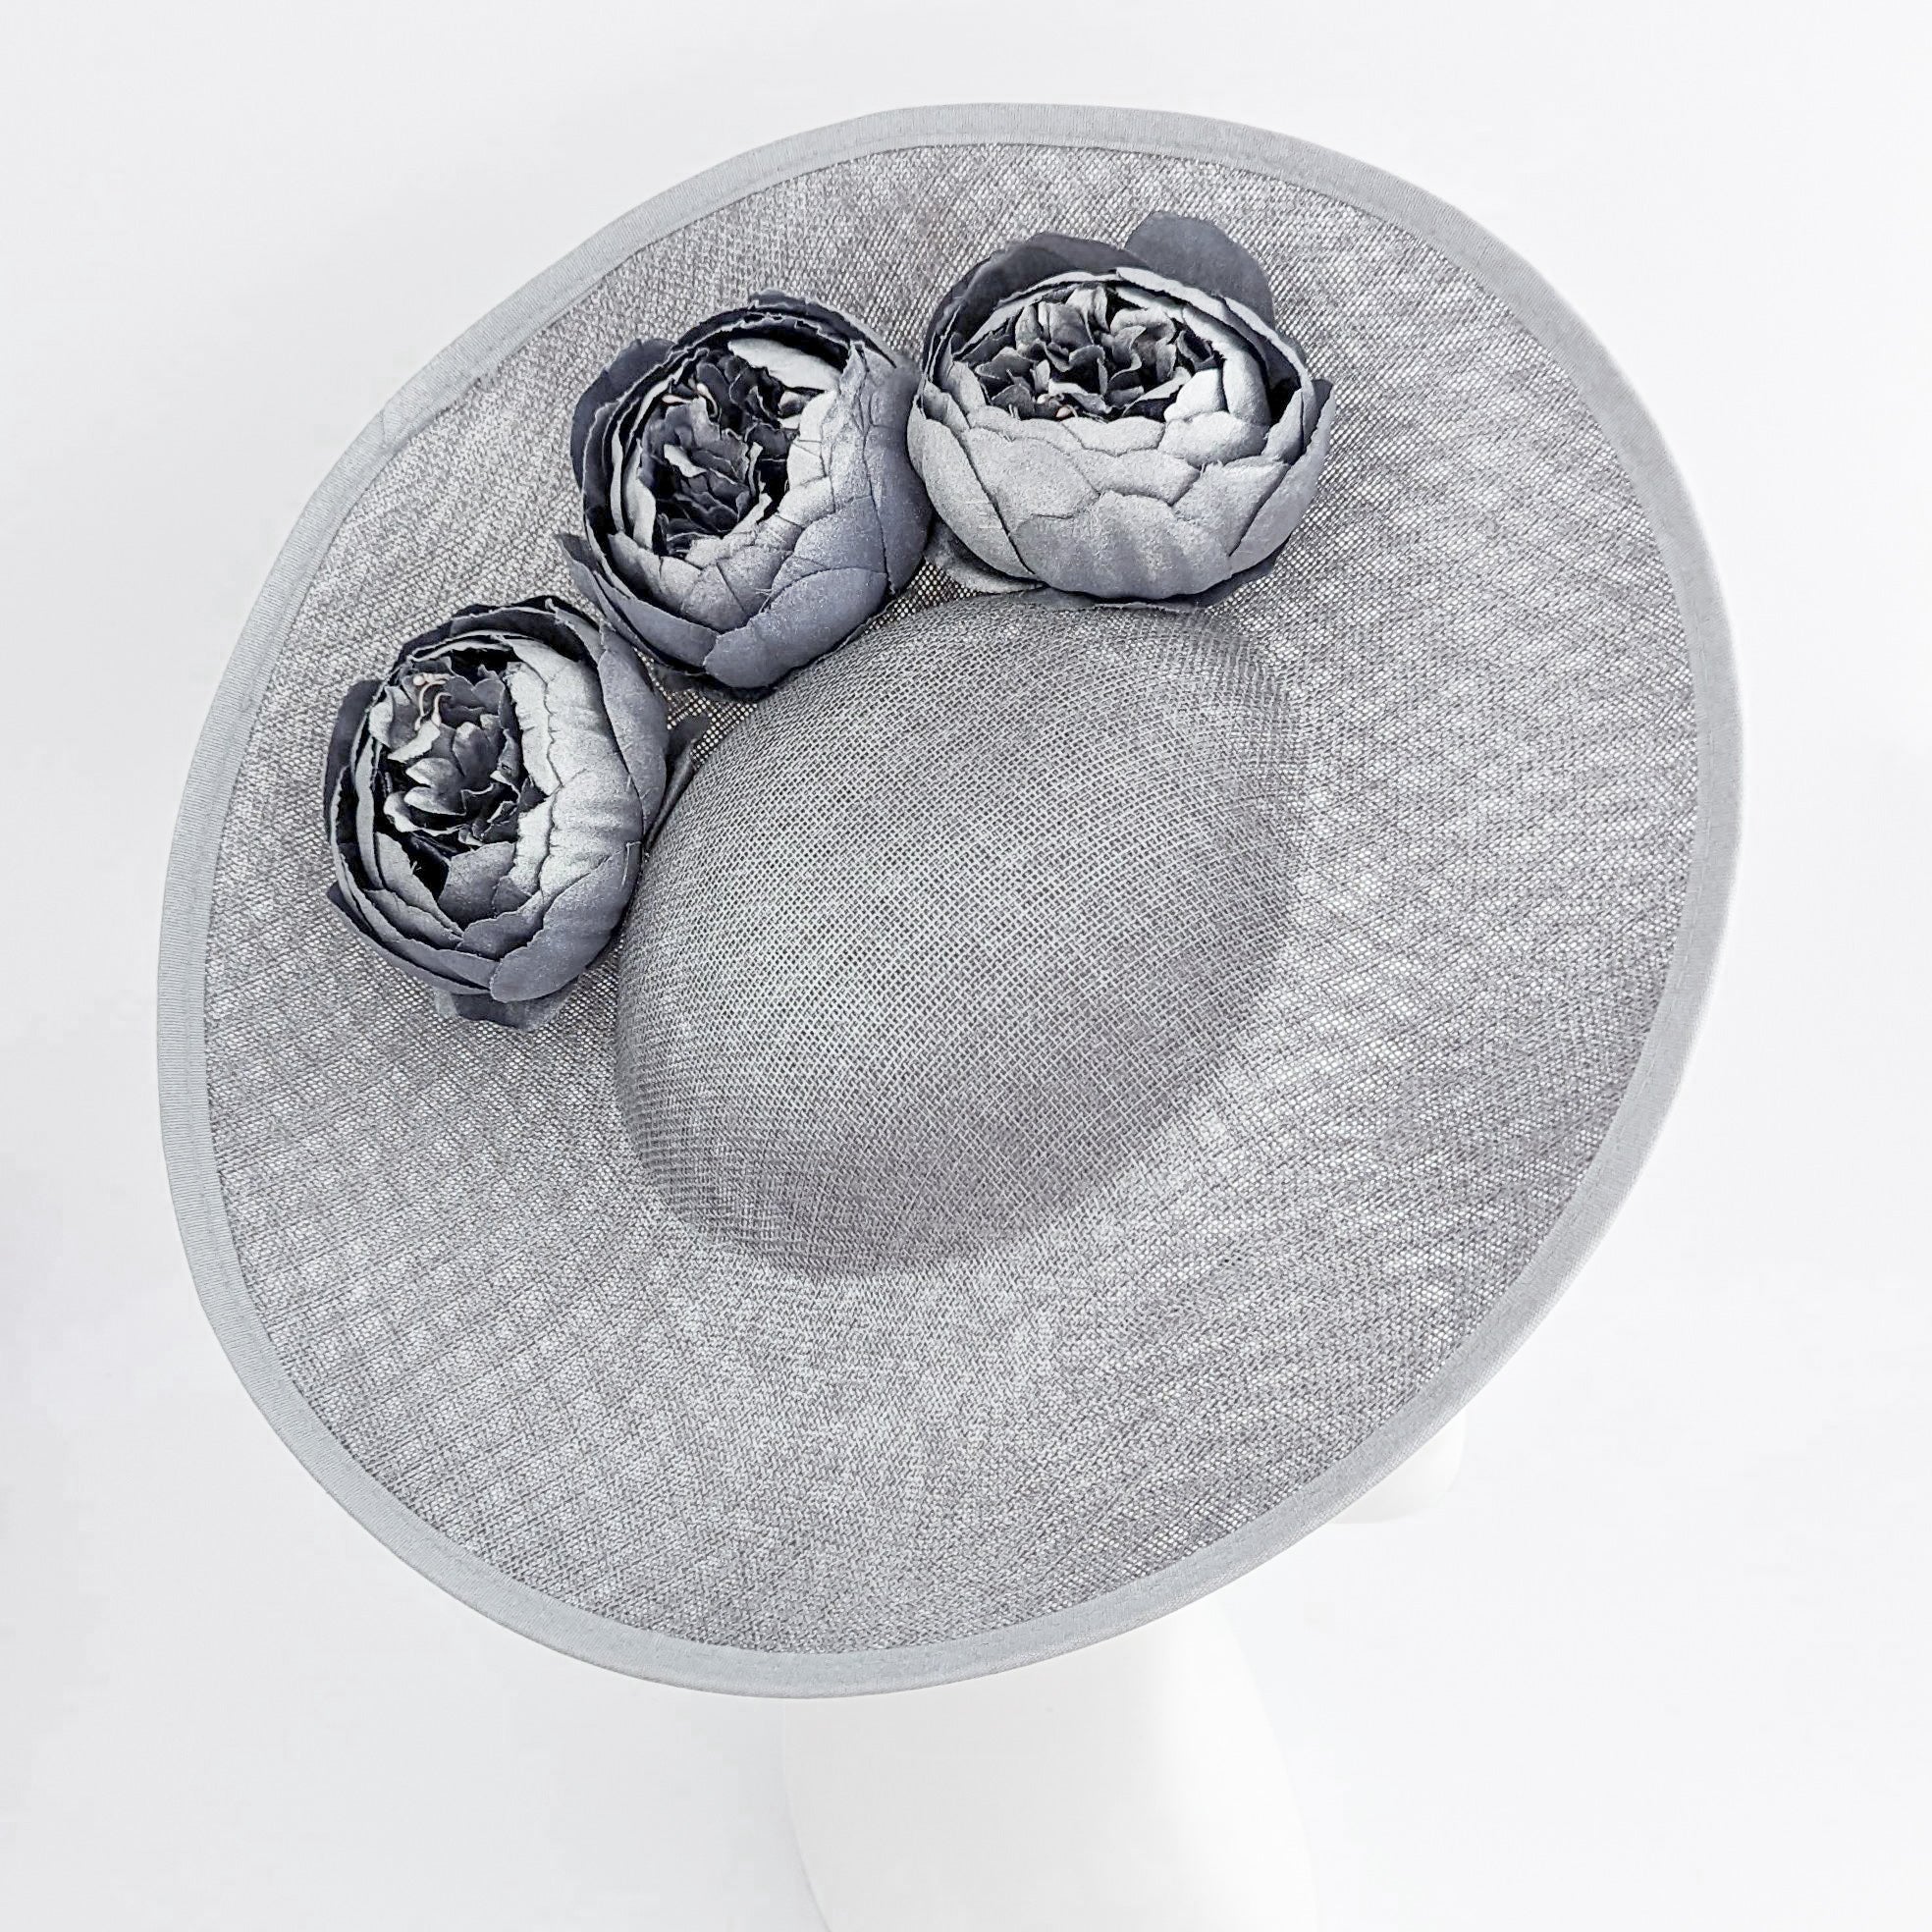 Silver shimmer flower large saucer disc fascinator hat